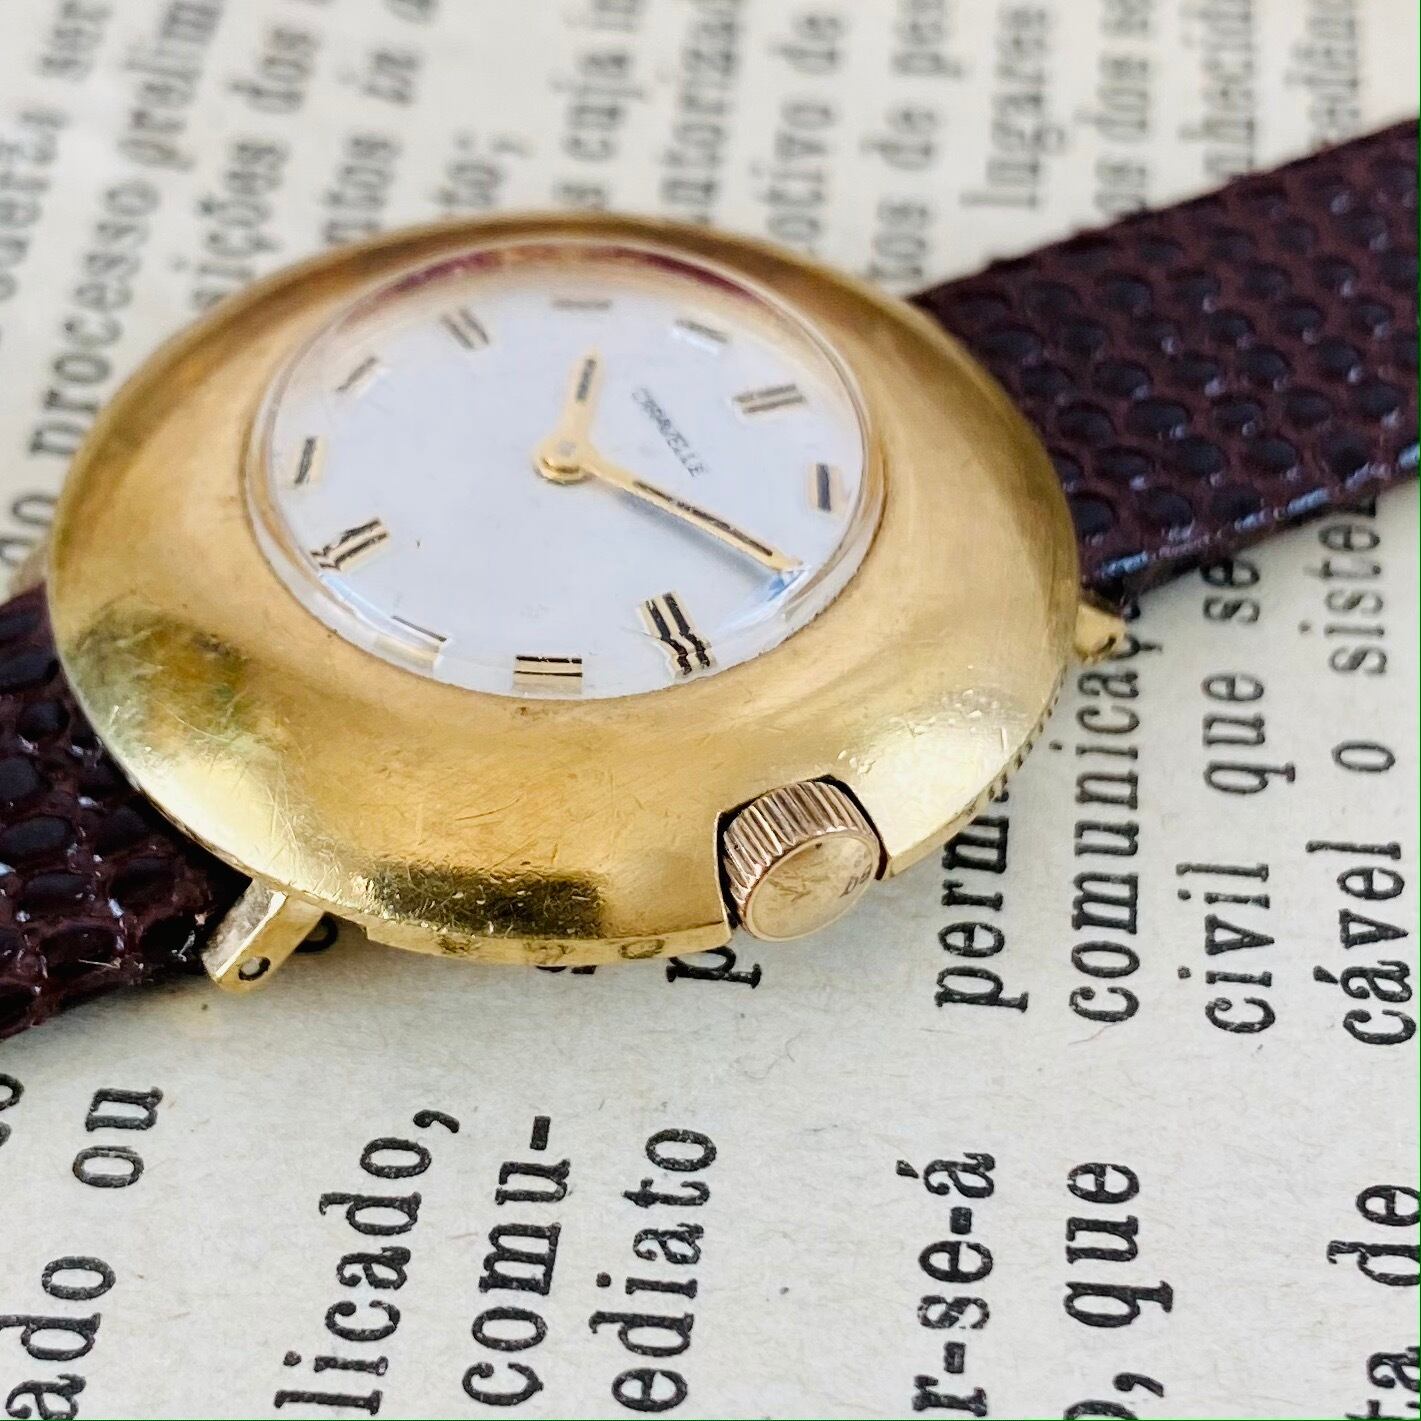 【高級腕時計キャラベル】Caravelle 1970年代 手巻き 17石 スイス メンズ レディース アンティーク ビンテージ アナログ 腕時計